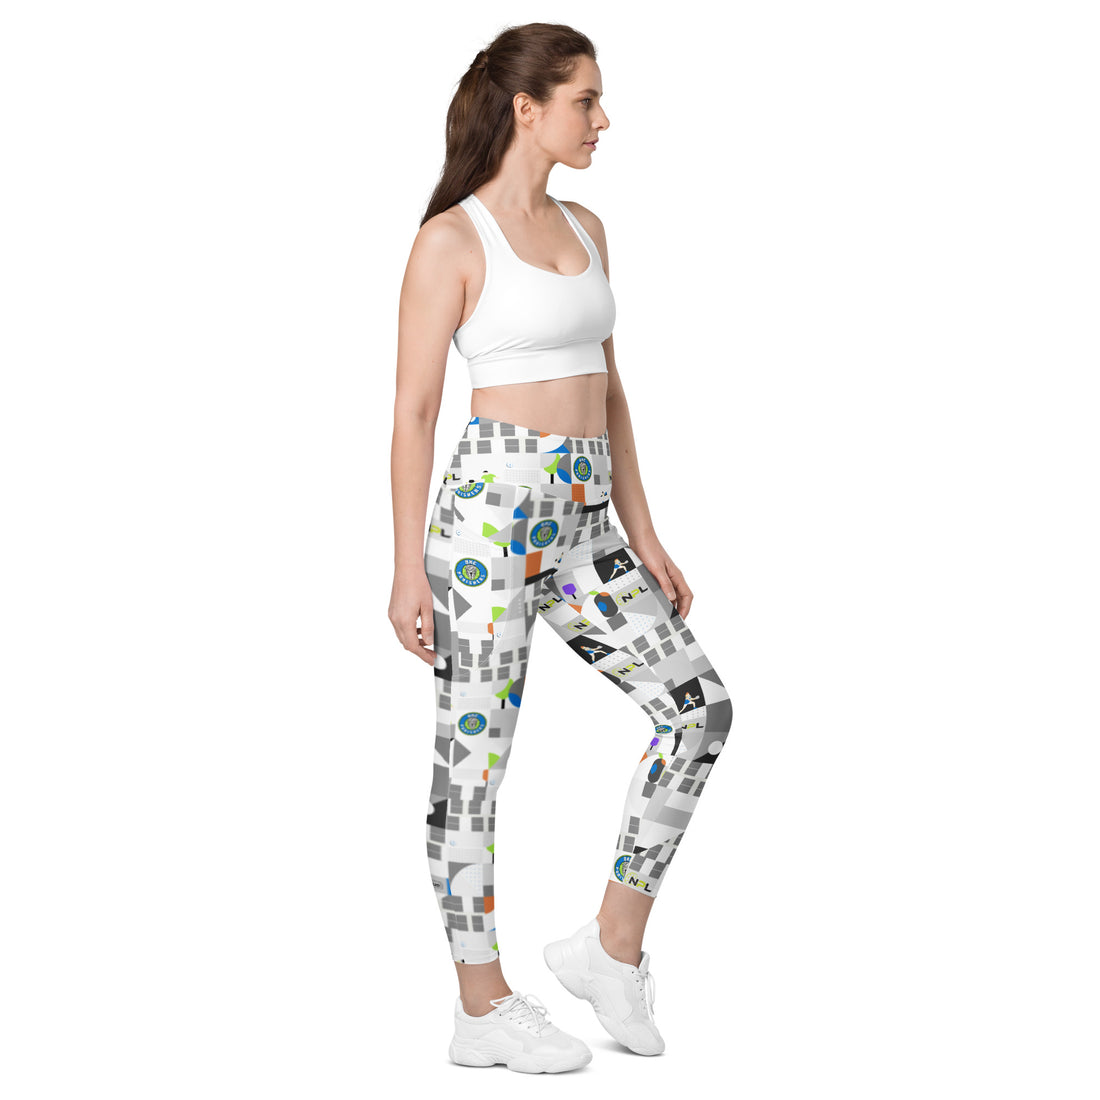 https://nplpickleball.store/cdn/shop/files/all-over-print-leggings-with-pockets-white-right-front-649c72e775fa6.jpg?v=1687974642&width=1100